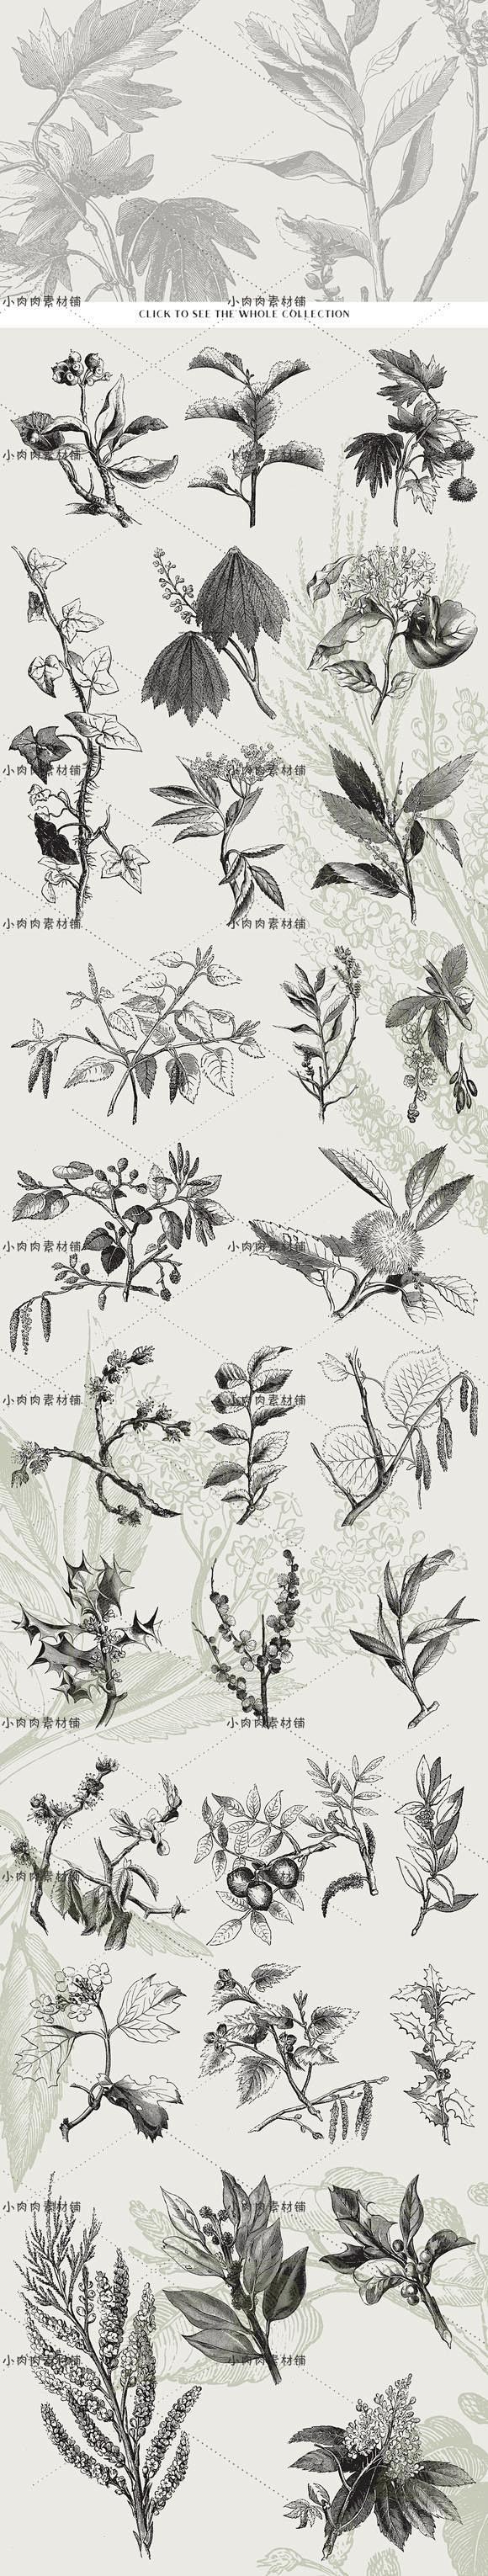 黑白手绘线稿图复古植物树叶种子包装印刷A...